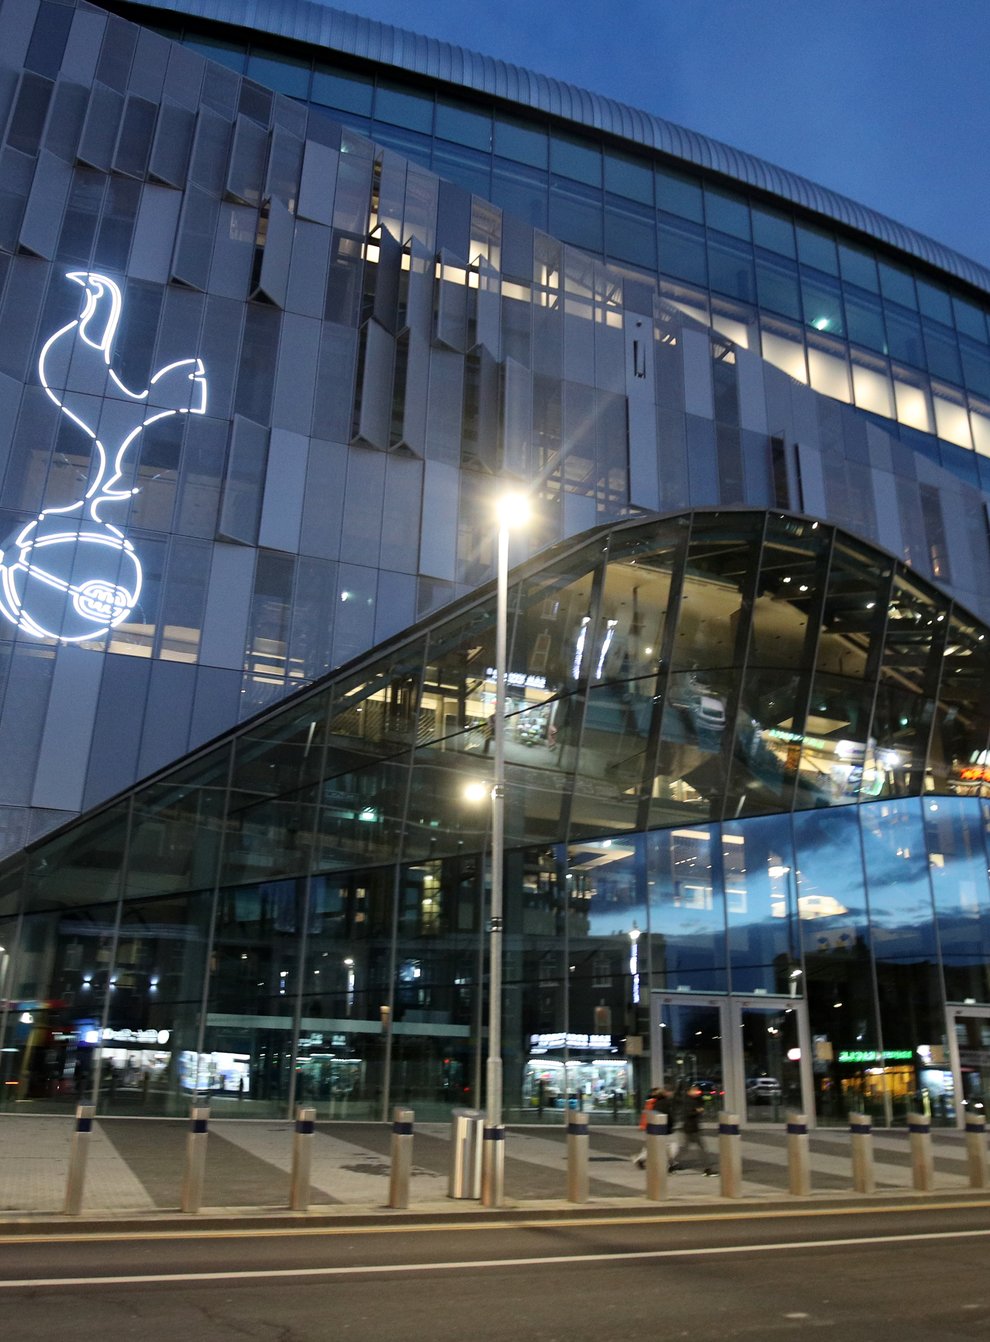 A view of Tottenham's stadium